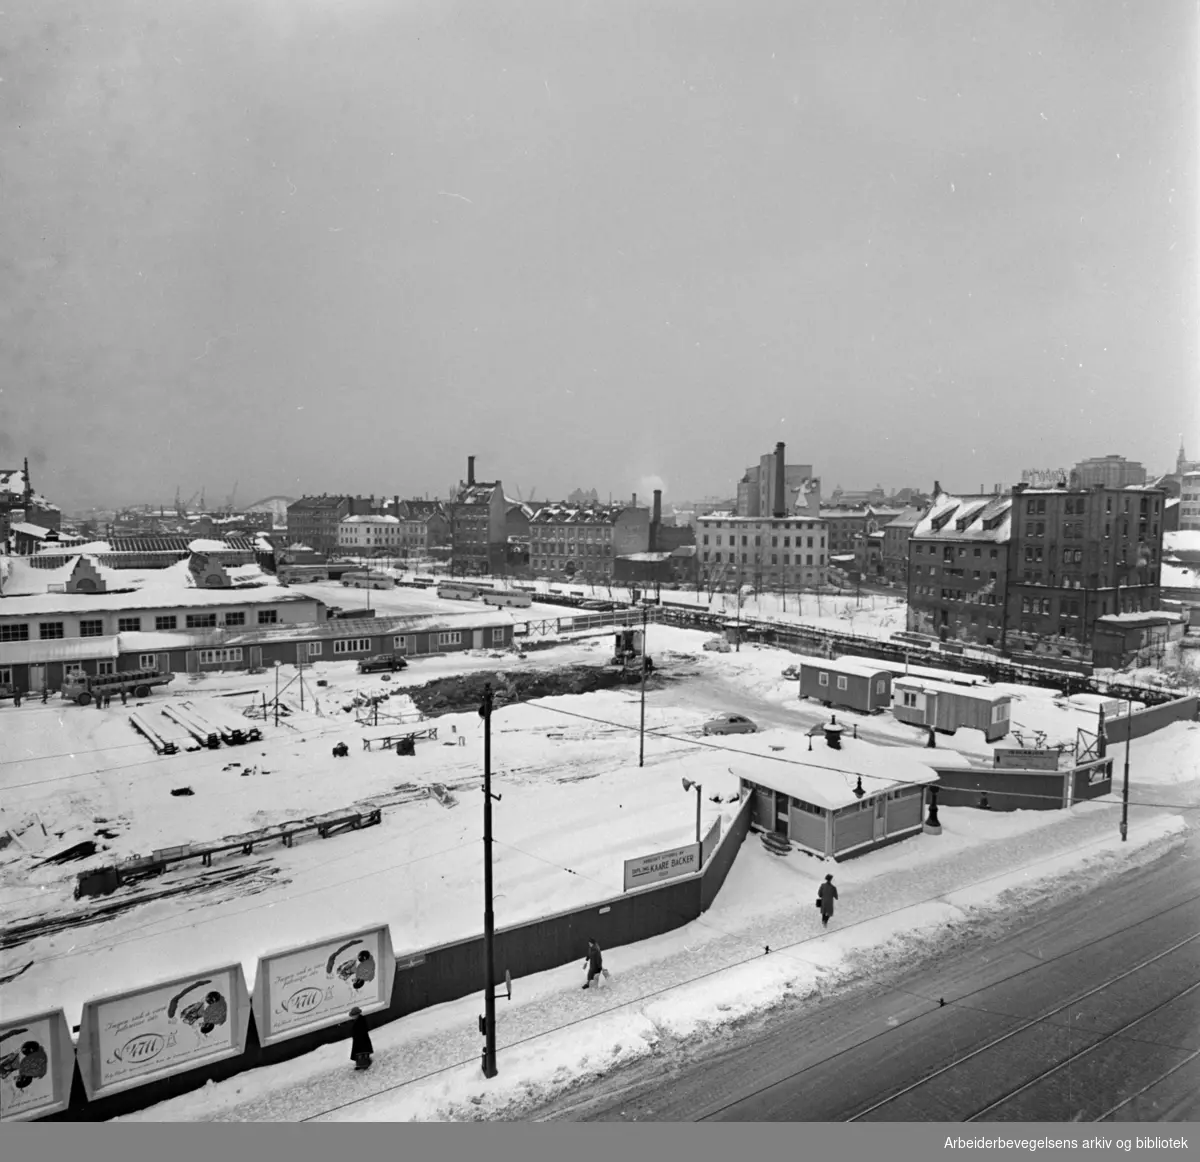 Grønlands Torg, anleggsplass for T-banearbeid, desember 1959.